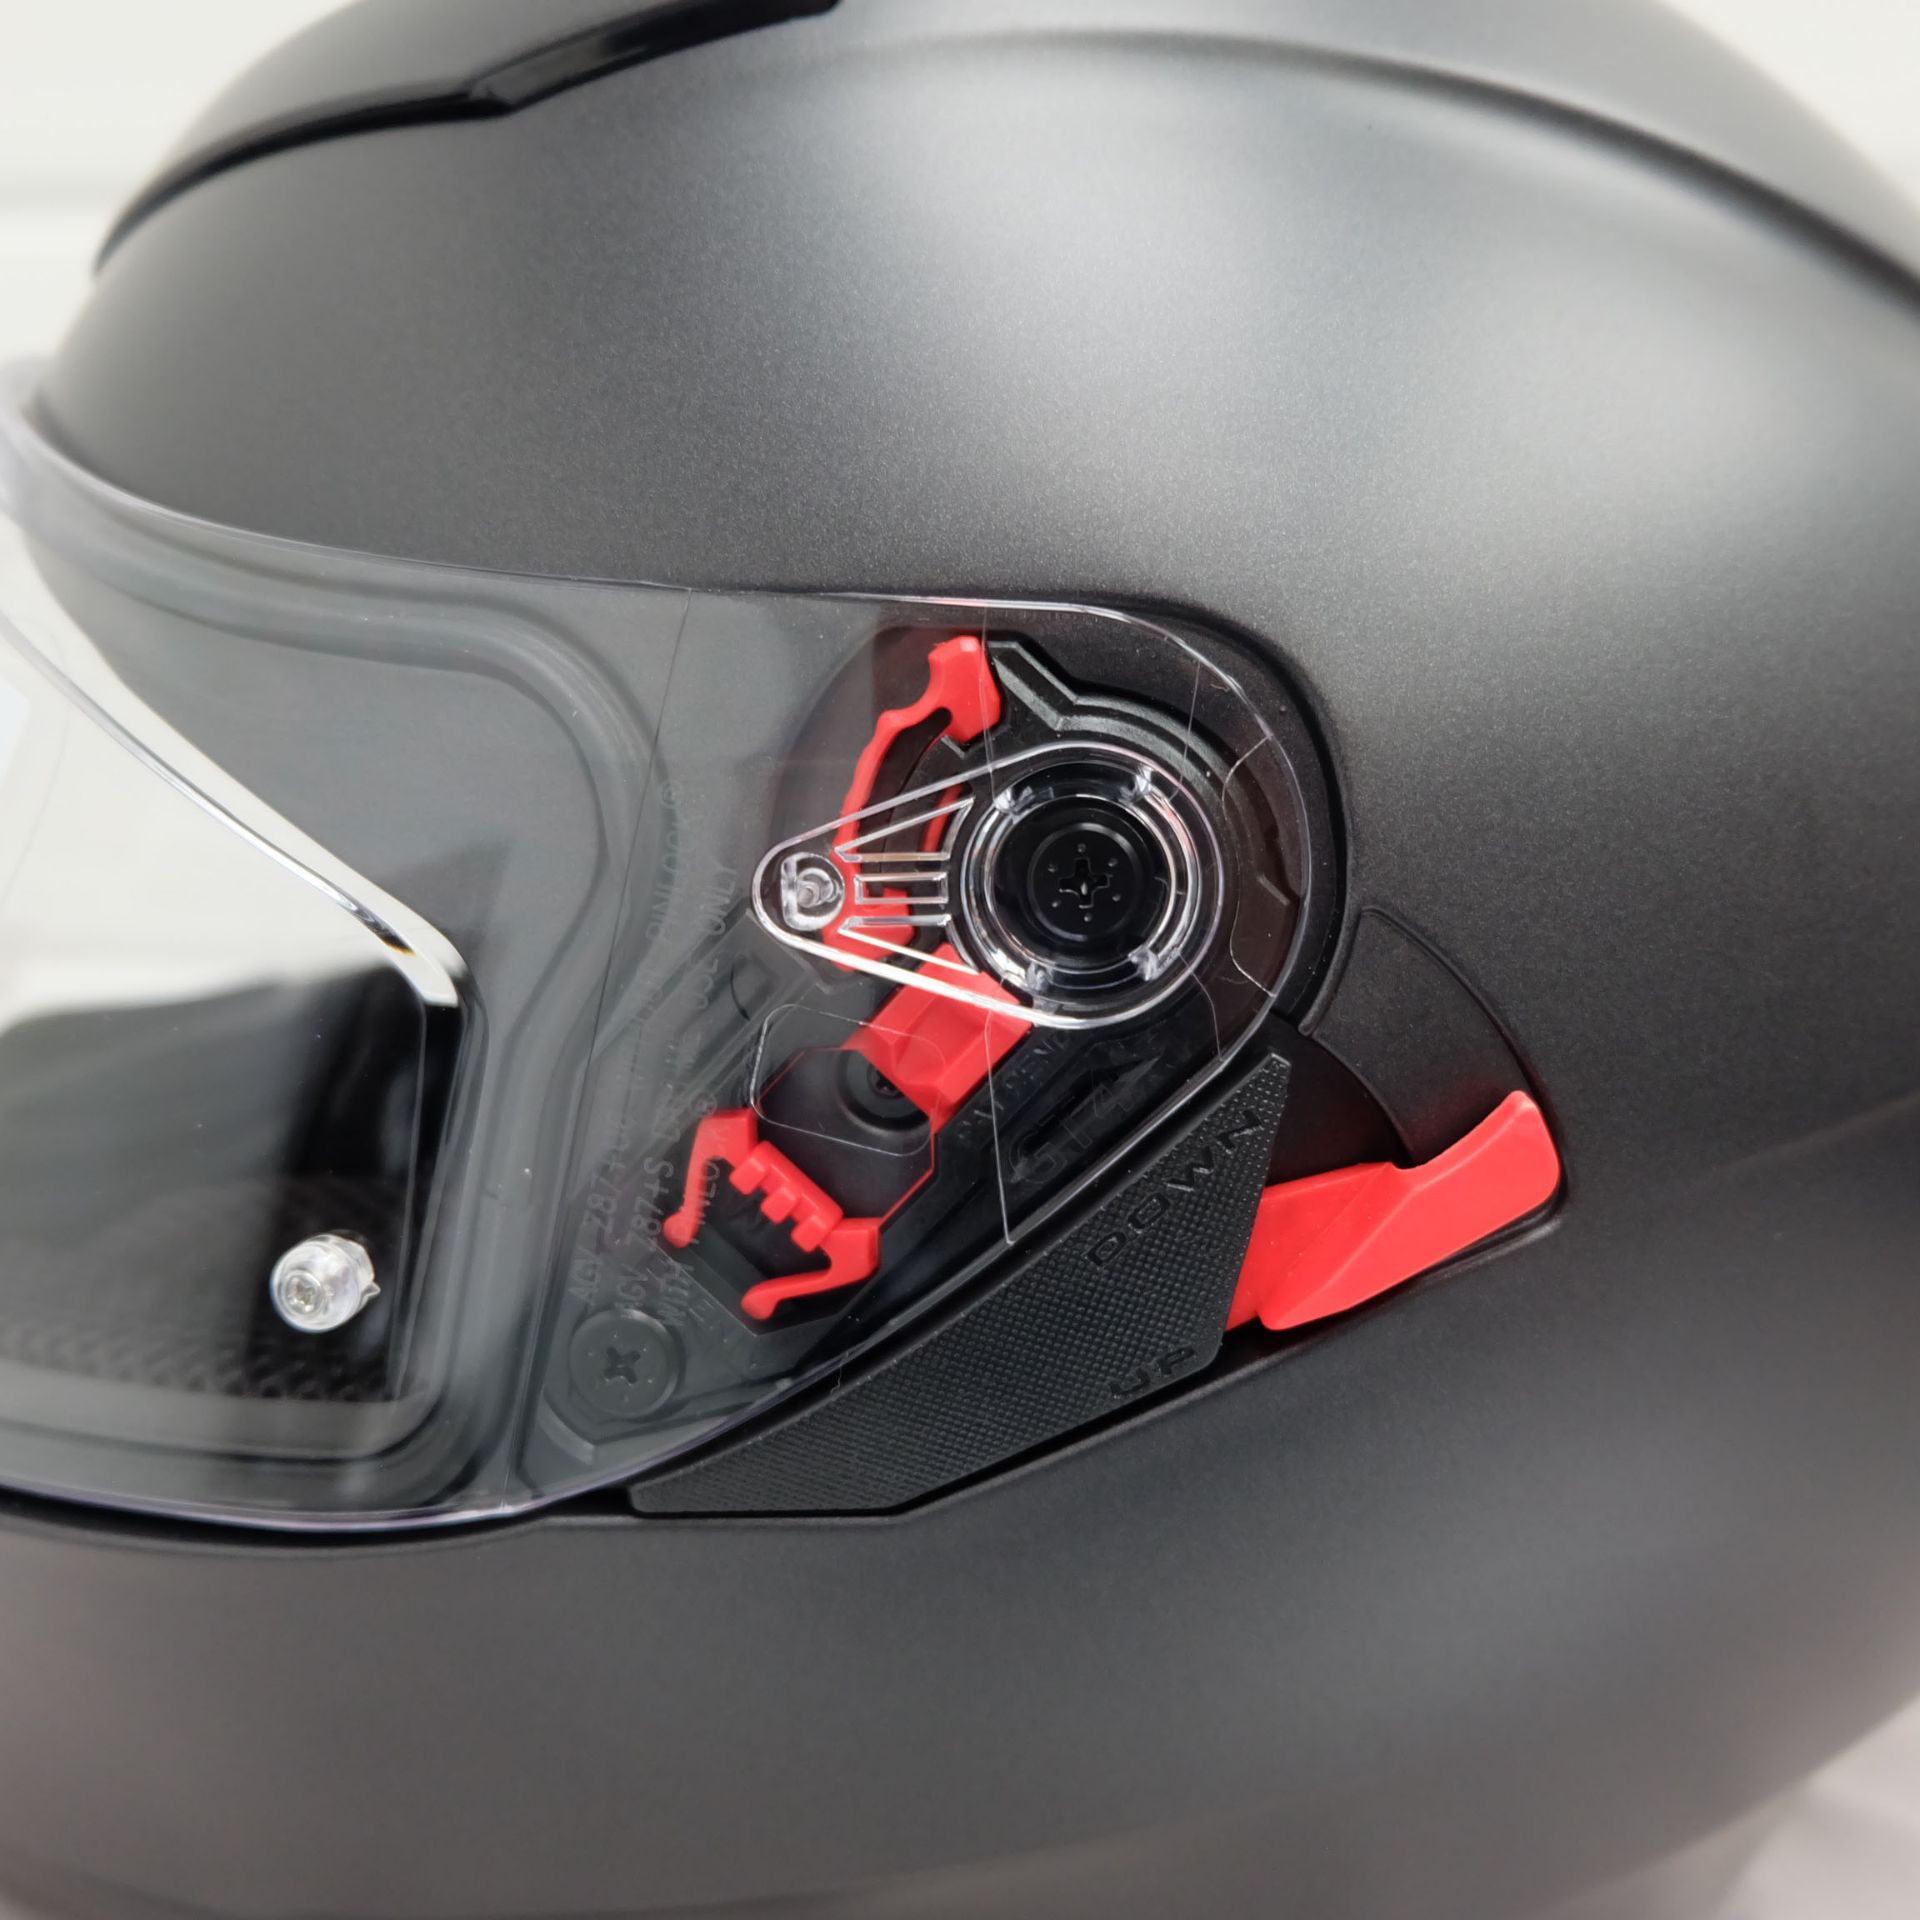 AGV K3 SV-S Full Face Helmet Matt Black Size Small - Image 7 of 12